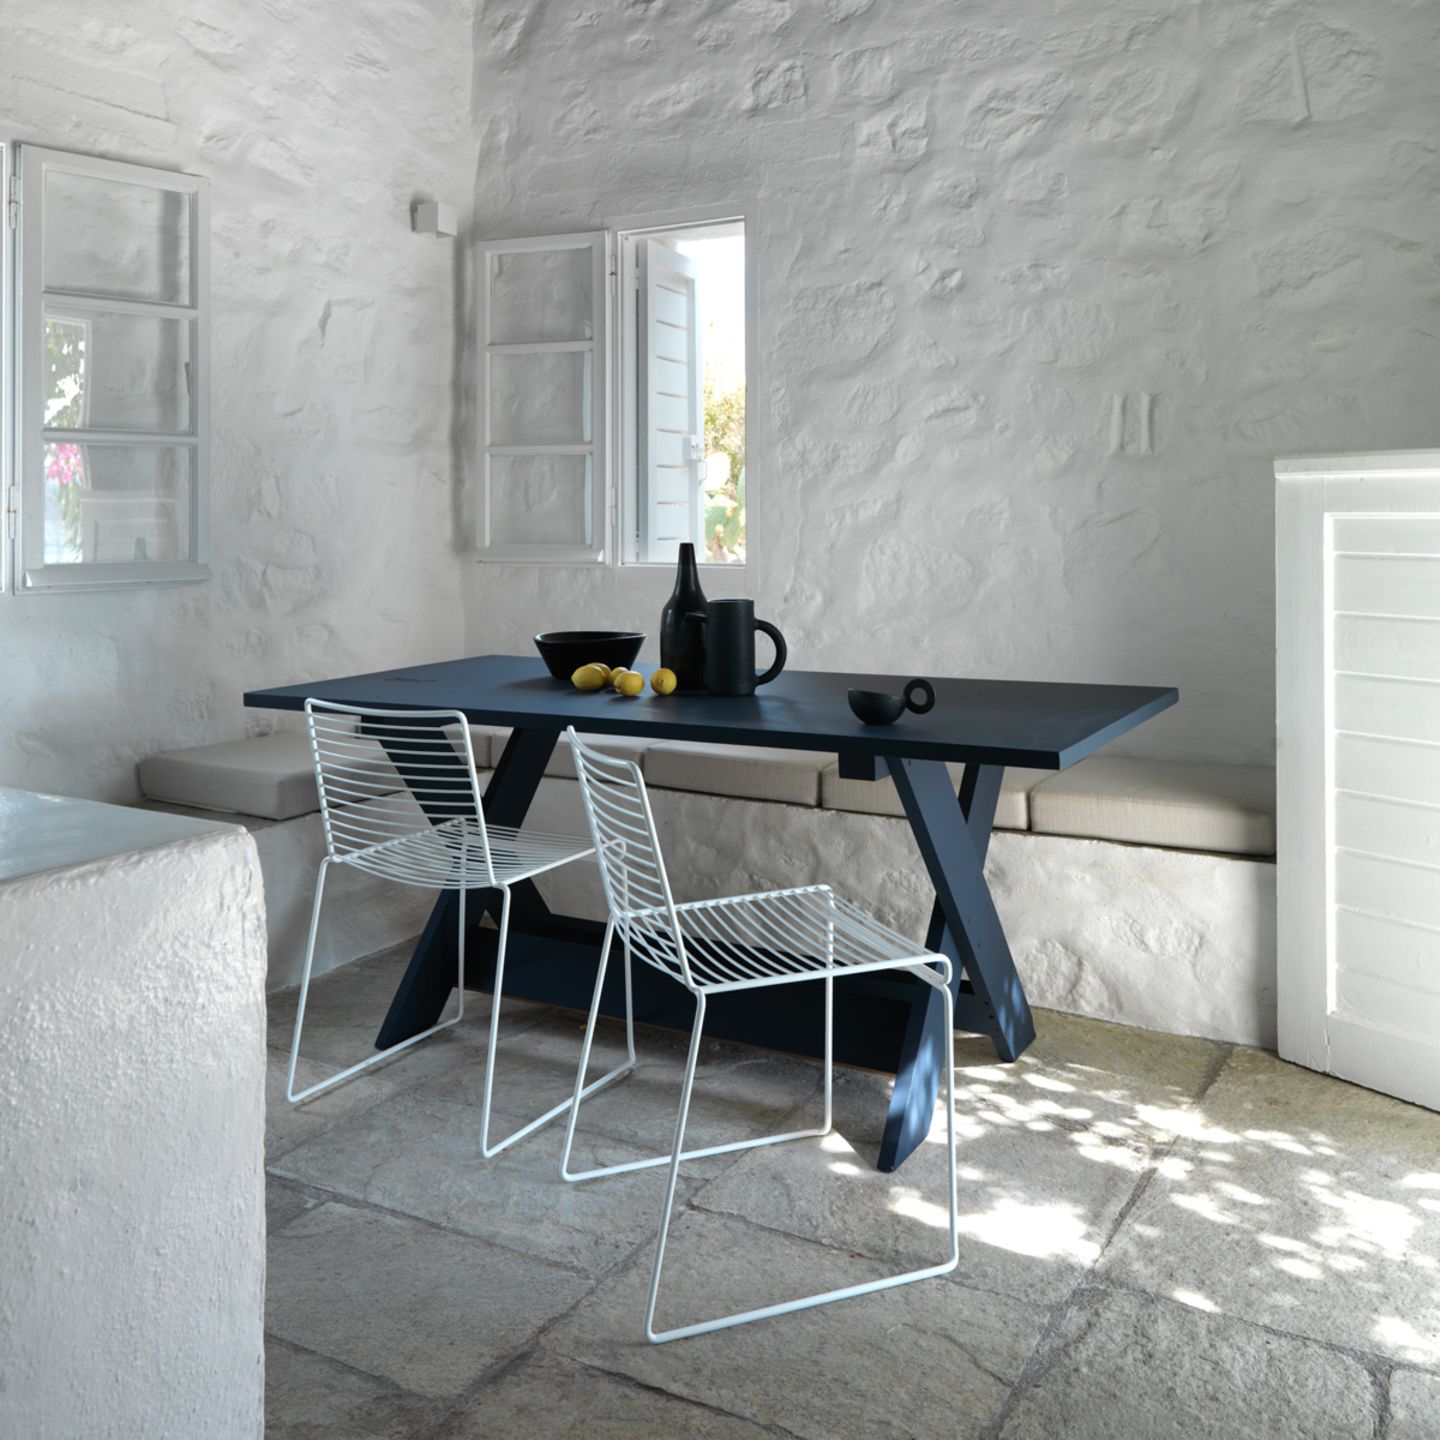 Markanter Holztisch im Ferienhaus auf Paros